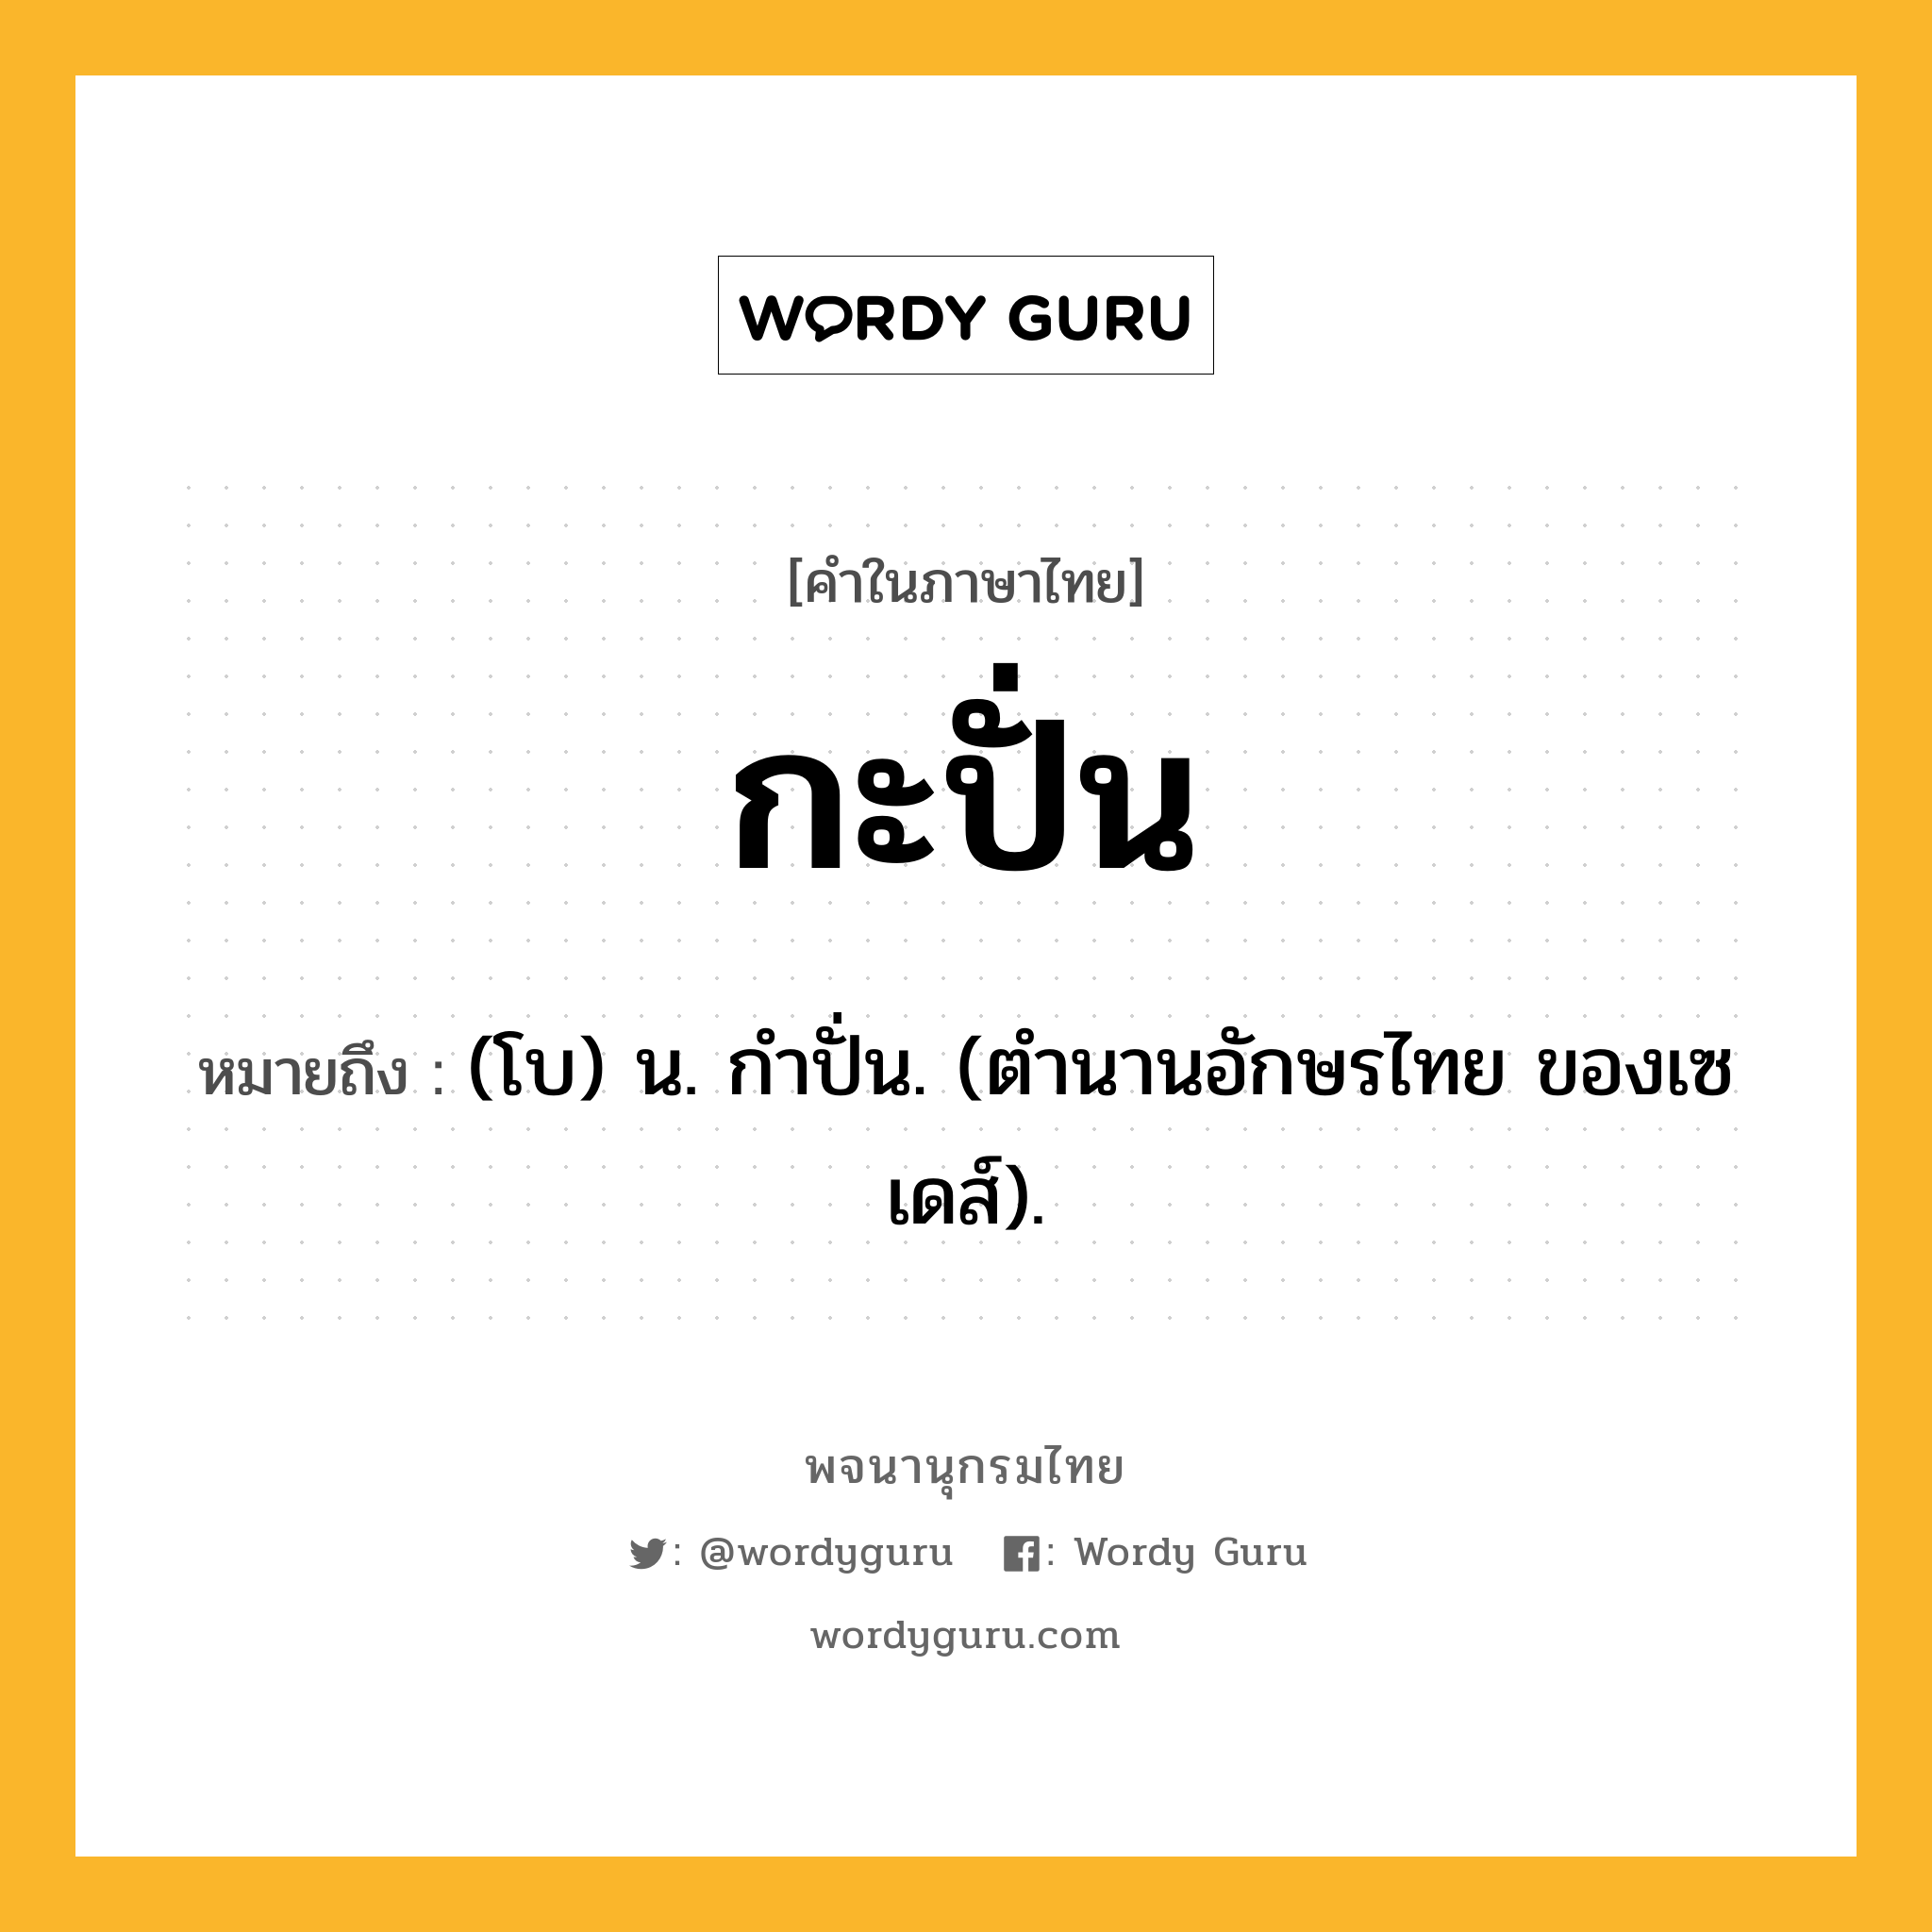 กะปั่น ความหมาย หมายถึงอะไร?, คำในภาษาไทย กะปั่น หมายถึง (โบ) น. กําปั่น. (ตํานานอักษรไทย ของเซเดส์).